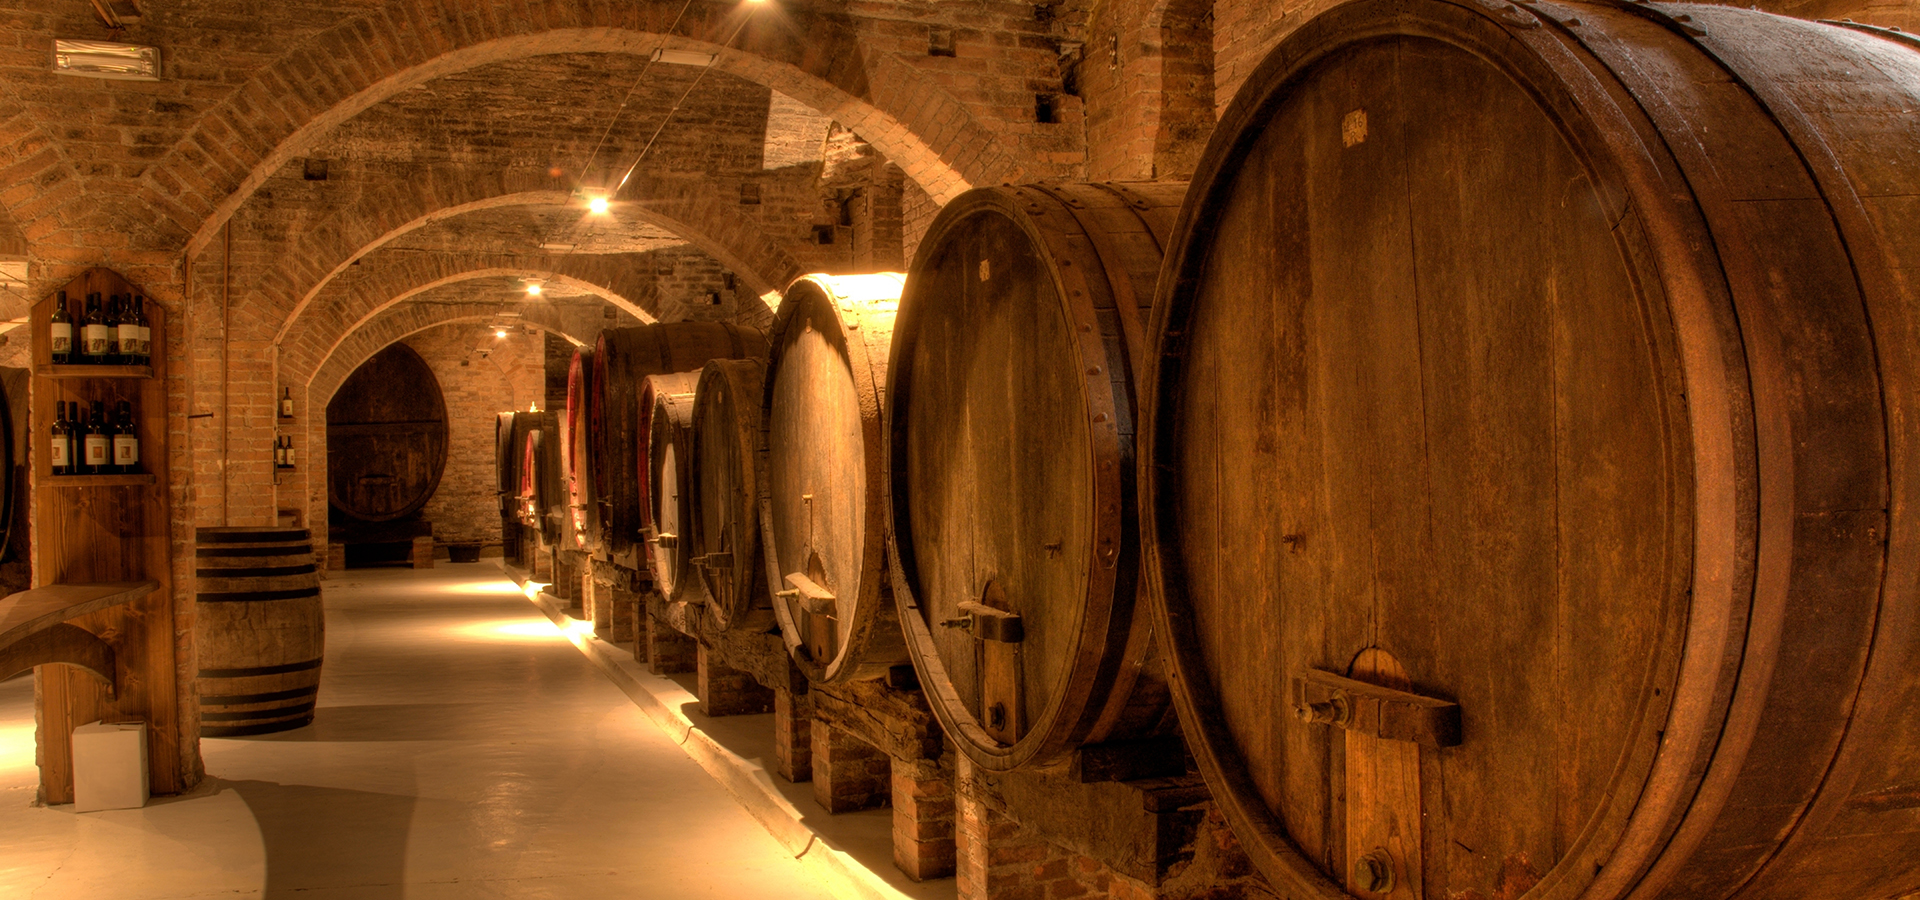 橡木桶对葡萄酒有什么影响？